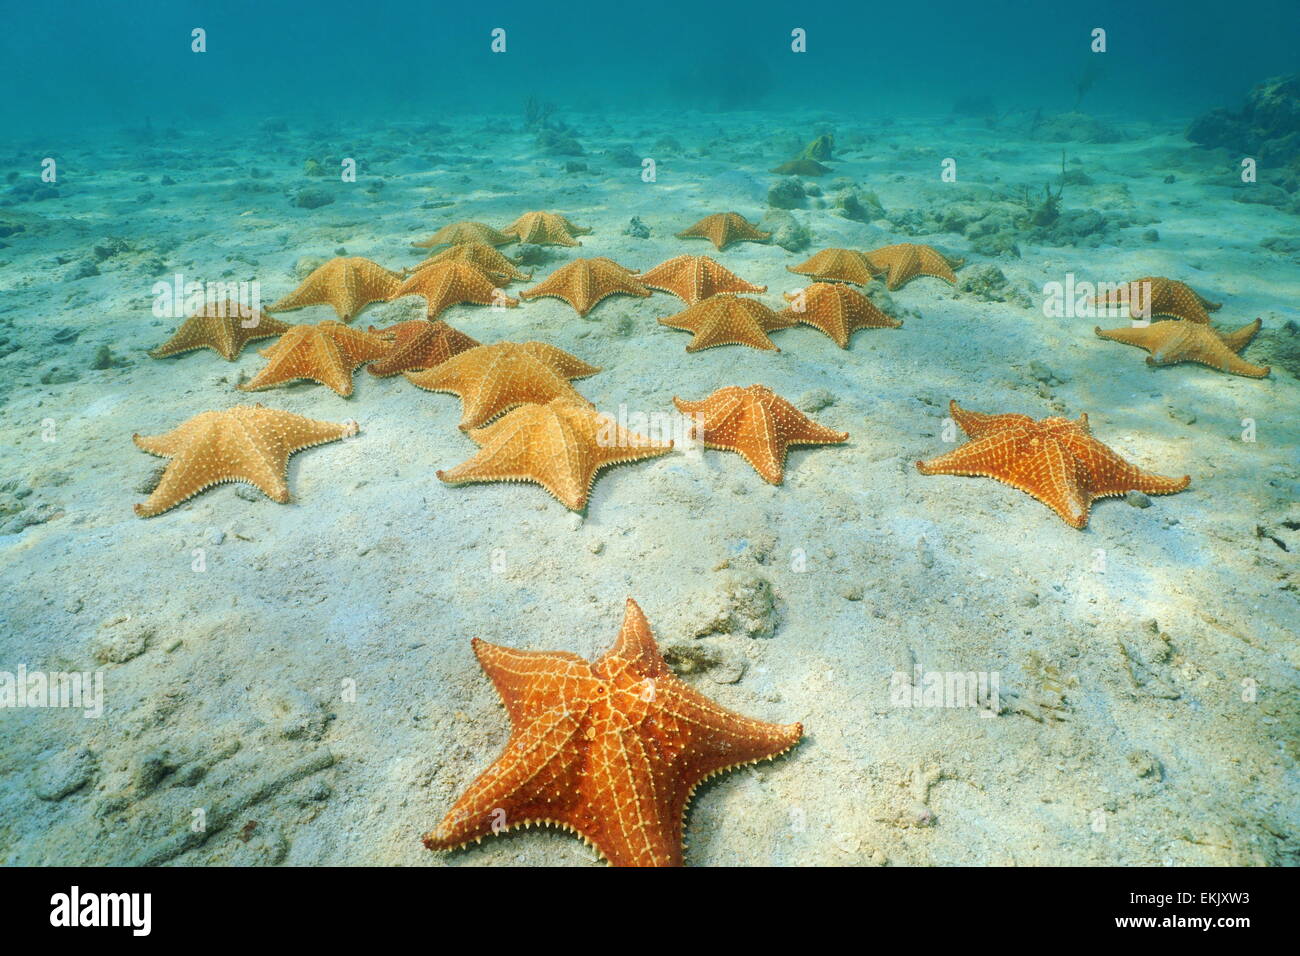 Cuscino stelle di mare, Oreaster reticulatus, sottomarini sul fondale sabbioso nei Caraibi, Panama America Centrale Foto Stock